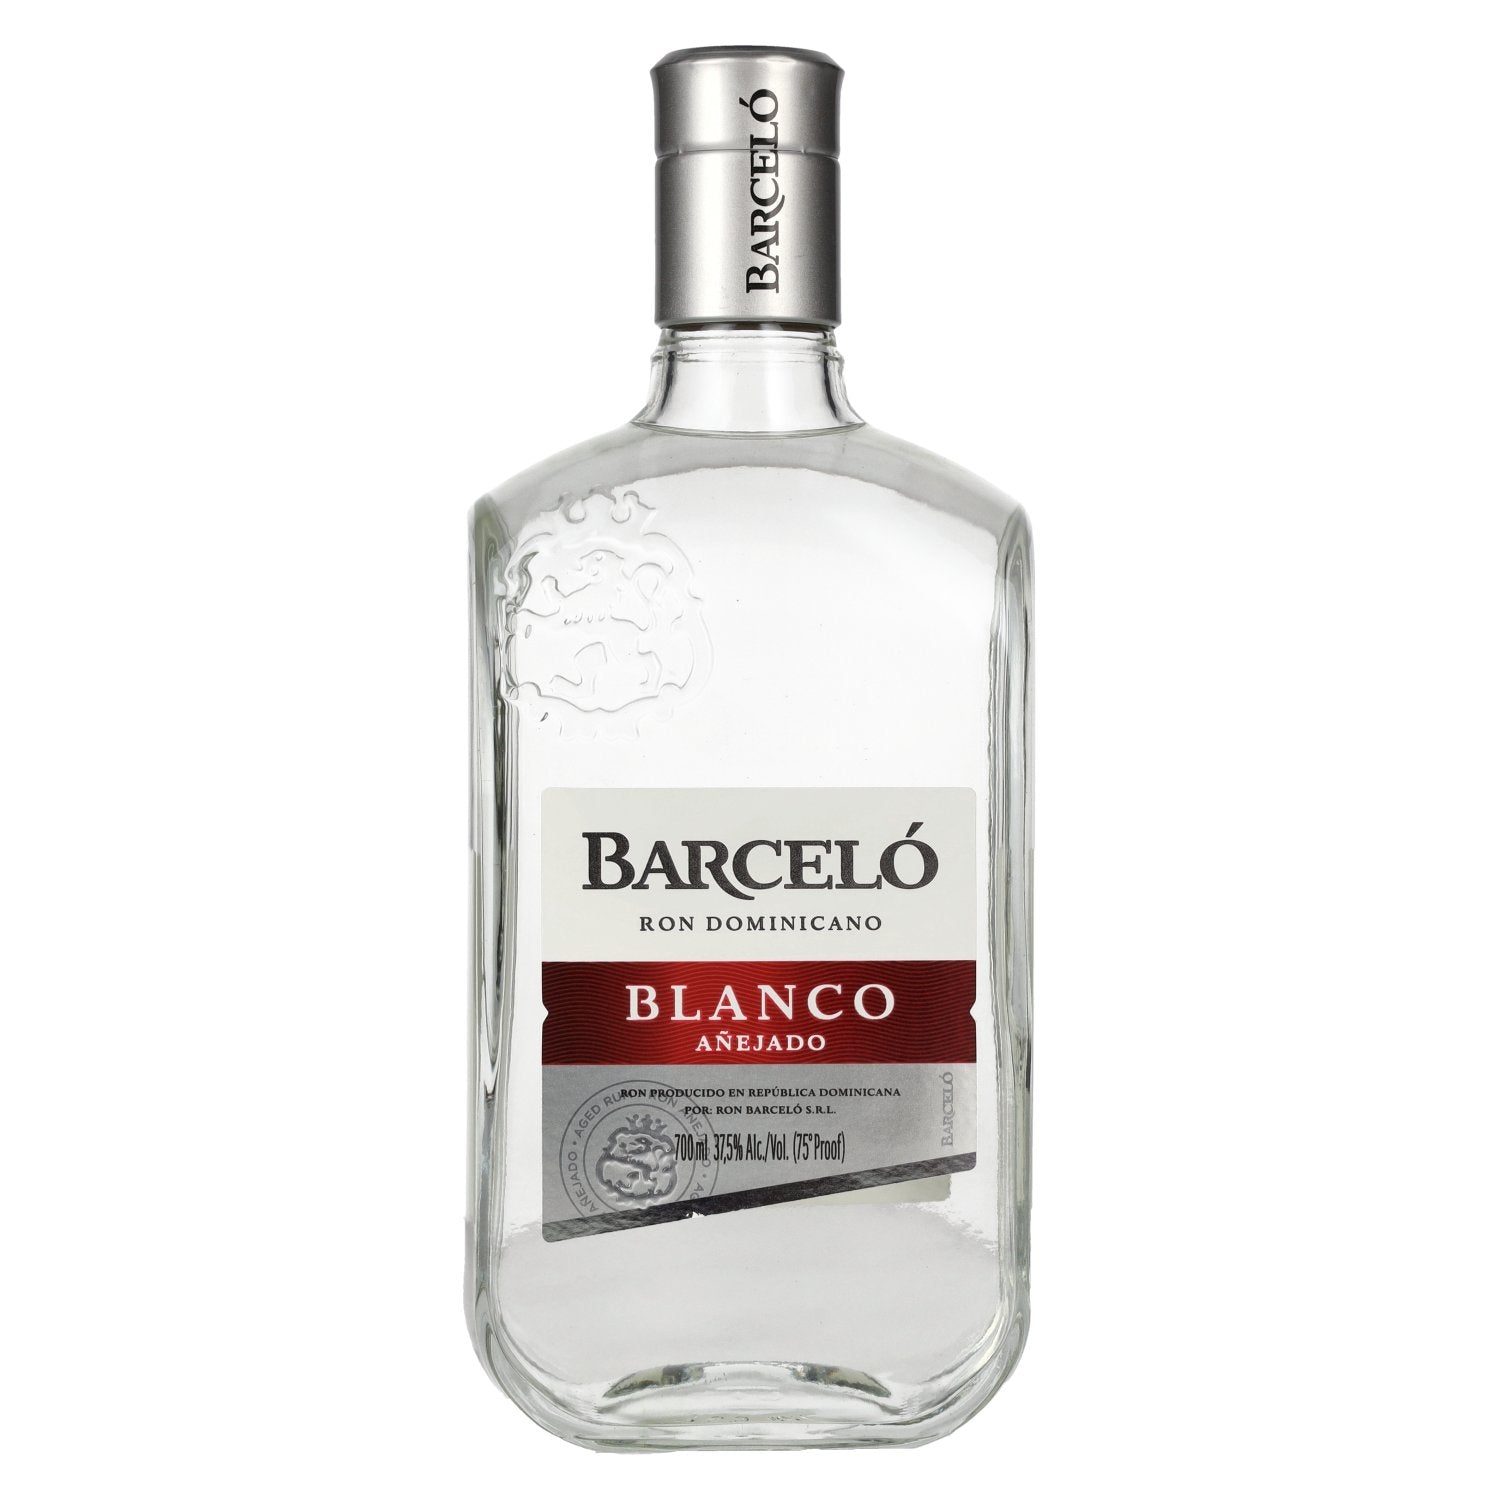 Barcelo Blanco Anejado Ron Dominicano 37,5% Vol. 0,7l